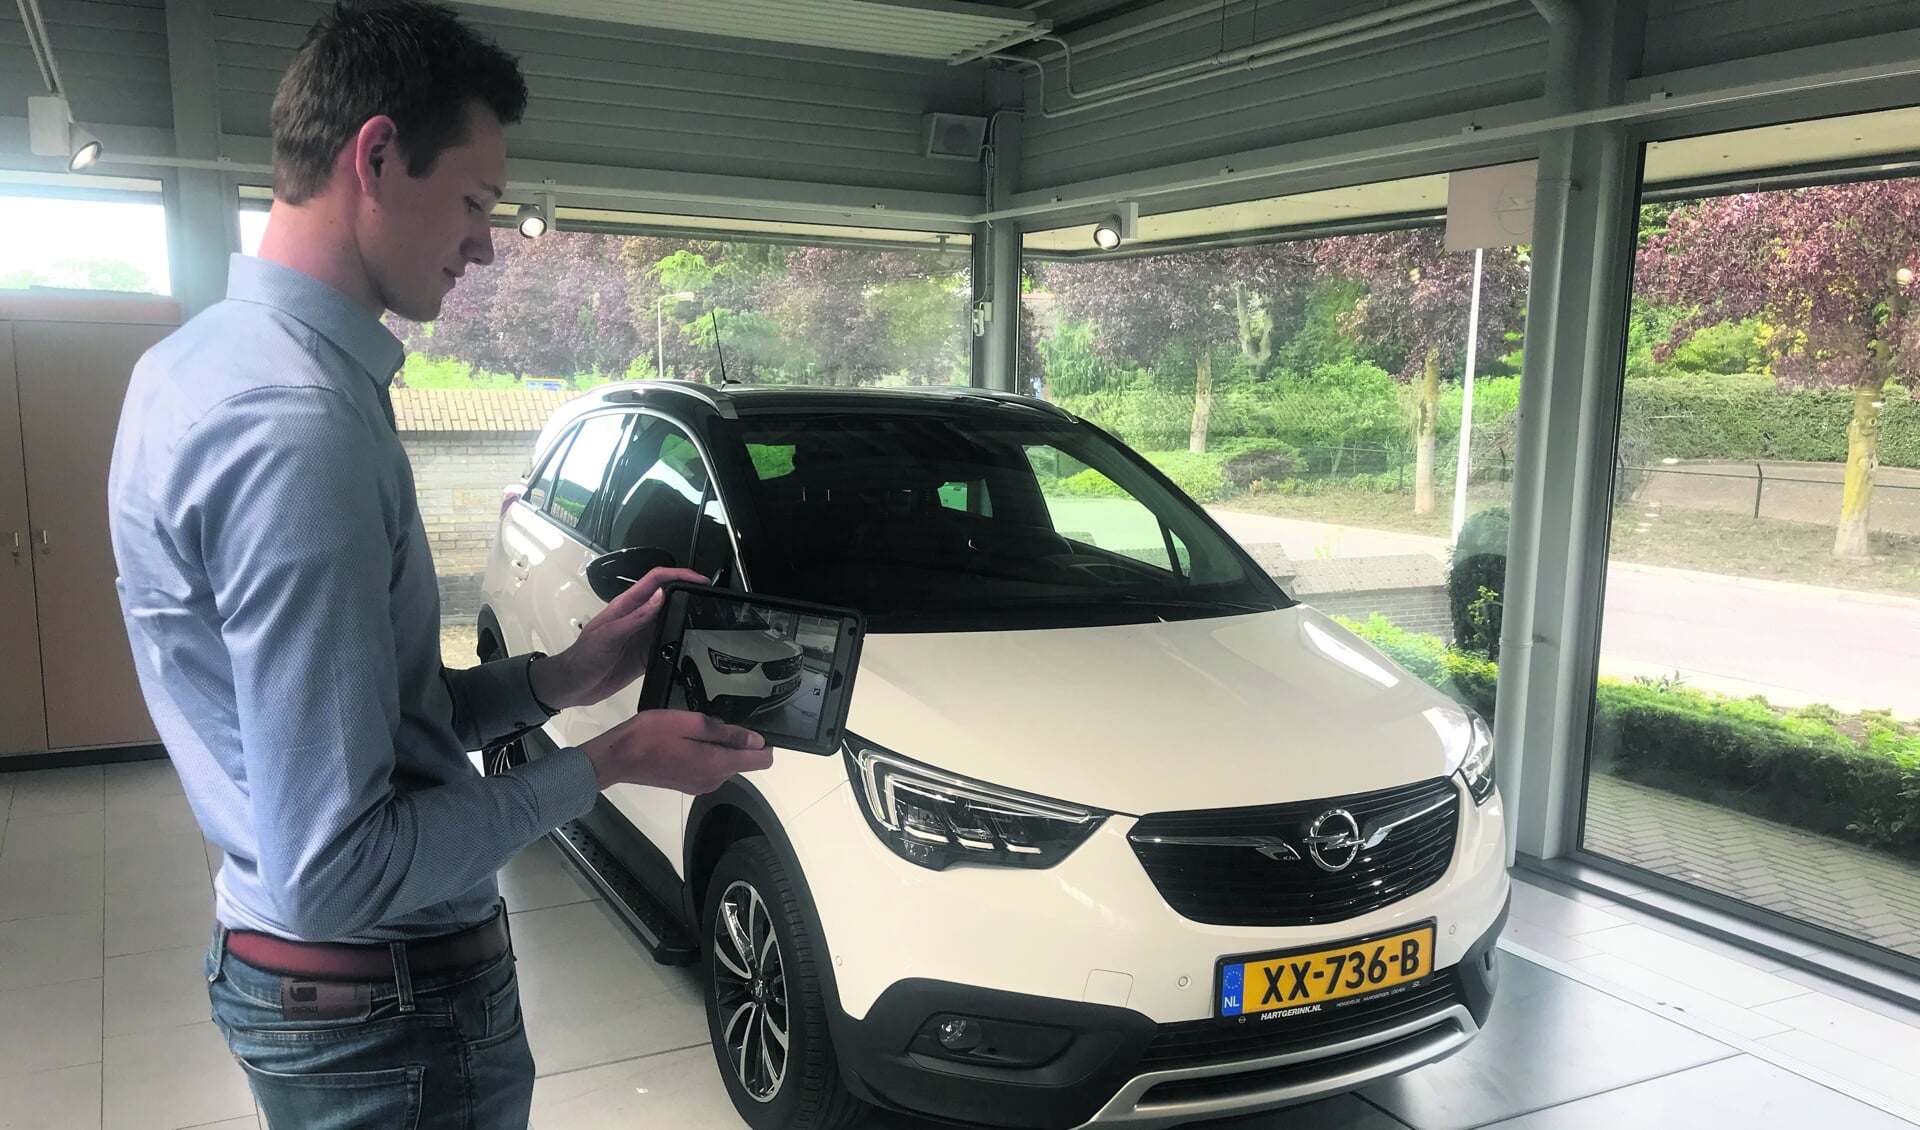 De medewerkers van Hartgerink kunnen via de digitale weg een uitstekend beeld geven van een auto, voor wie liever (nog) niet naar de zaak komt. Foto: PR